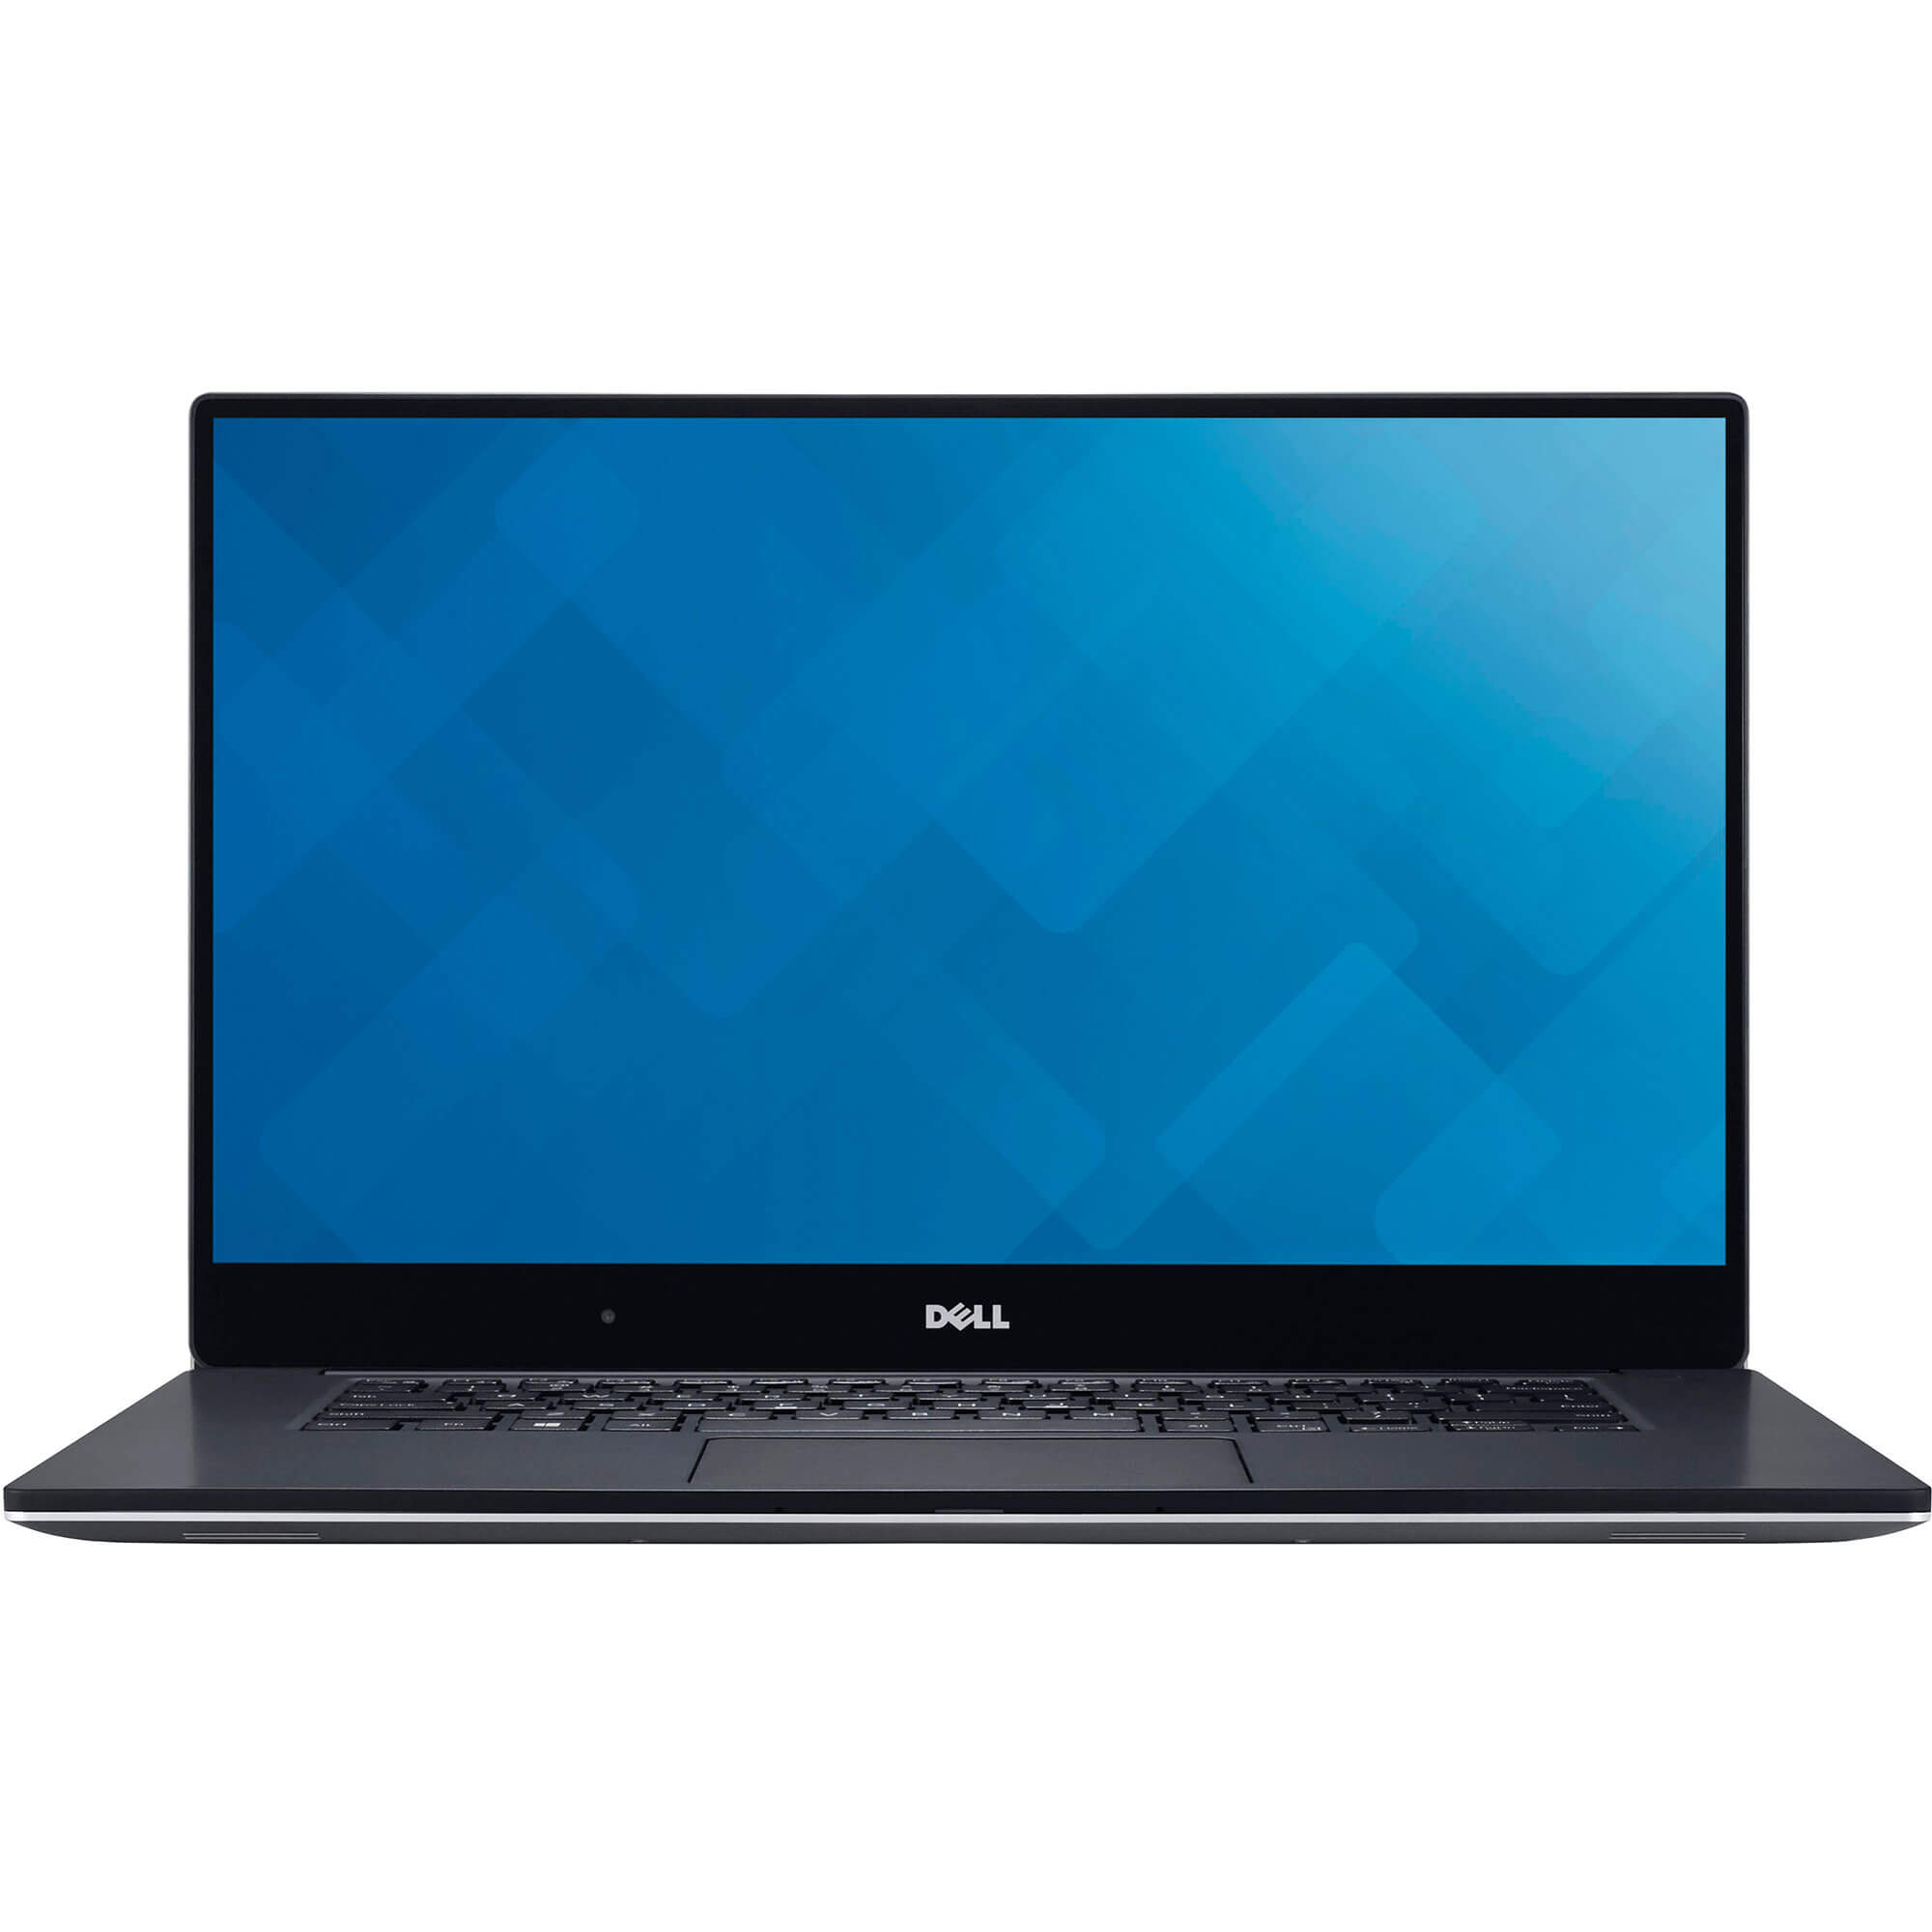  Laptop Ultrabook Dell XPS 9550, Intel Core i7-6700HQ, 16GB DDR4, SSD 512GB, GeForce GTX960M, Windows 10 